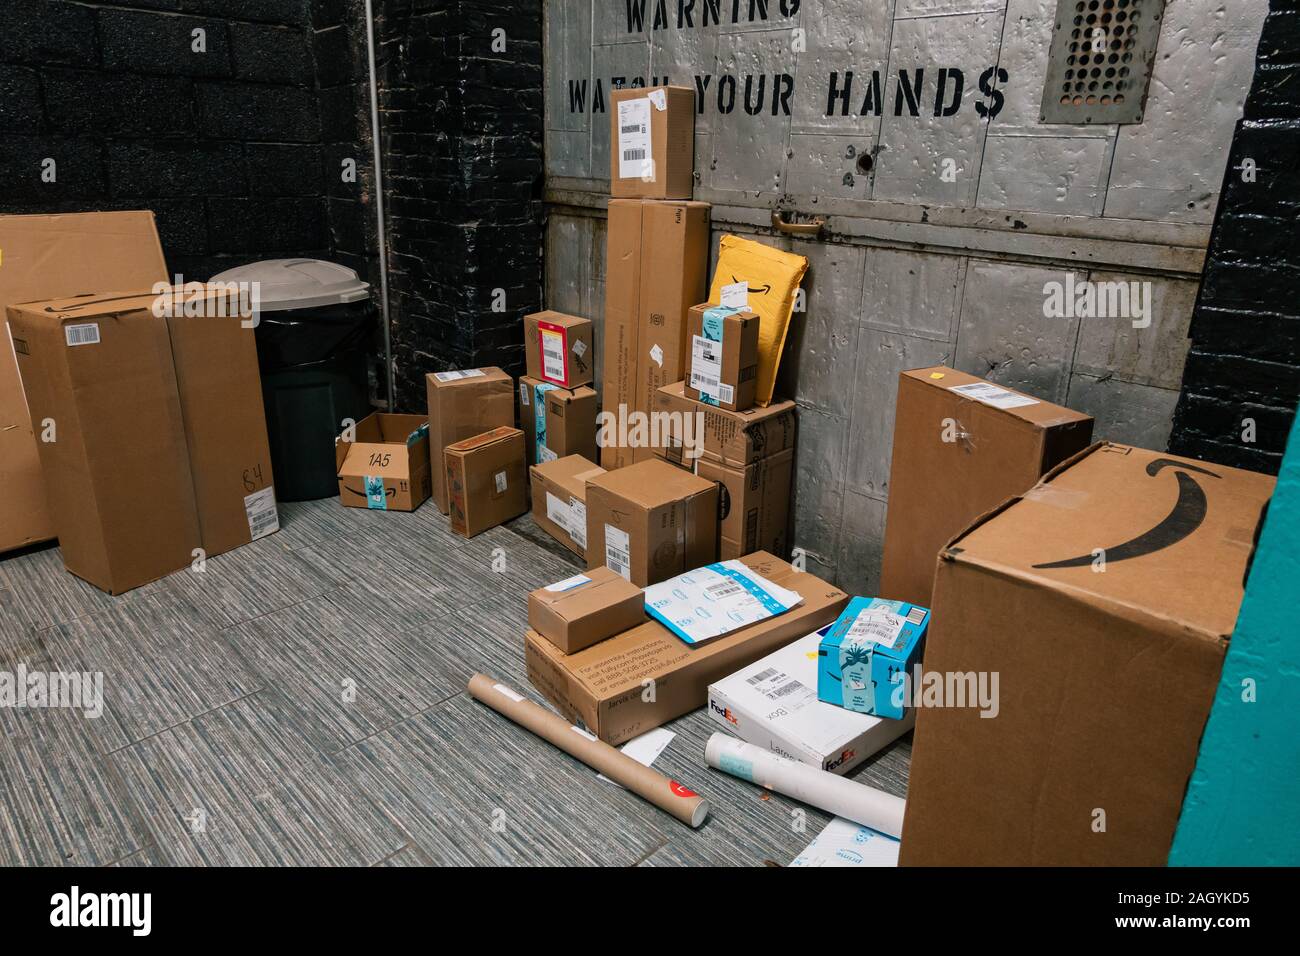 Amazon, FedEx et USPS autres forfaits livraison Vente en ligne d'être empilés recueillies auprès d'une salle de courrier appartement à Brooklyn, New York, USA Banque D'Images